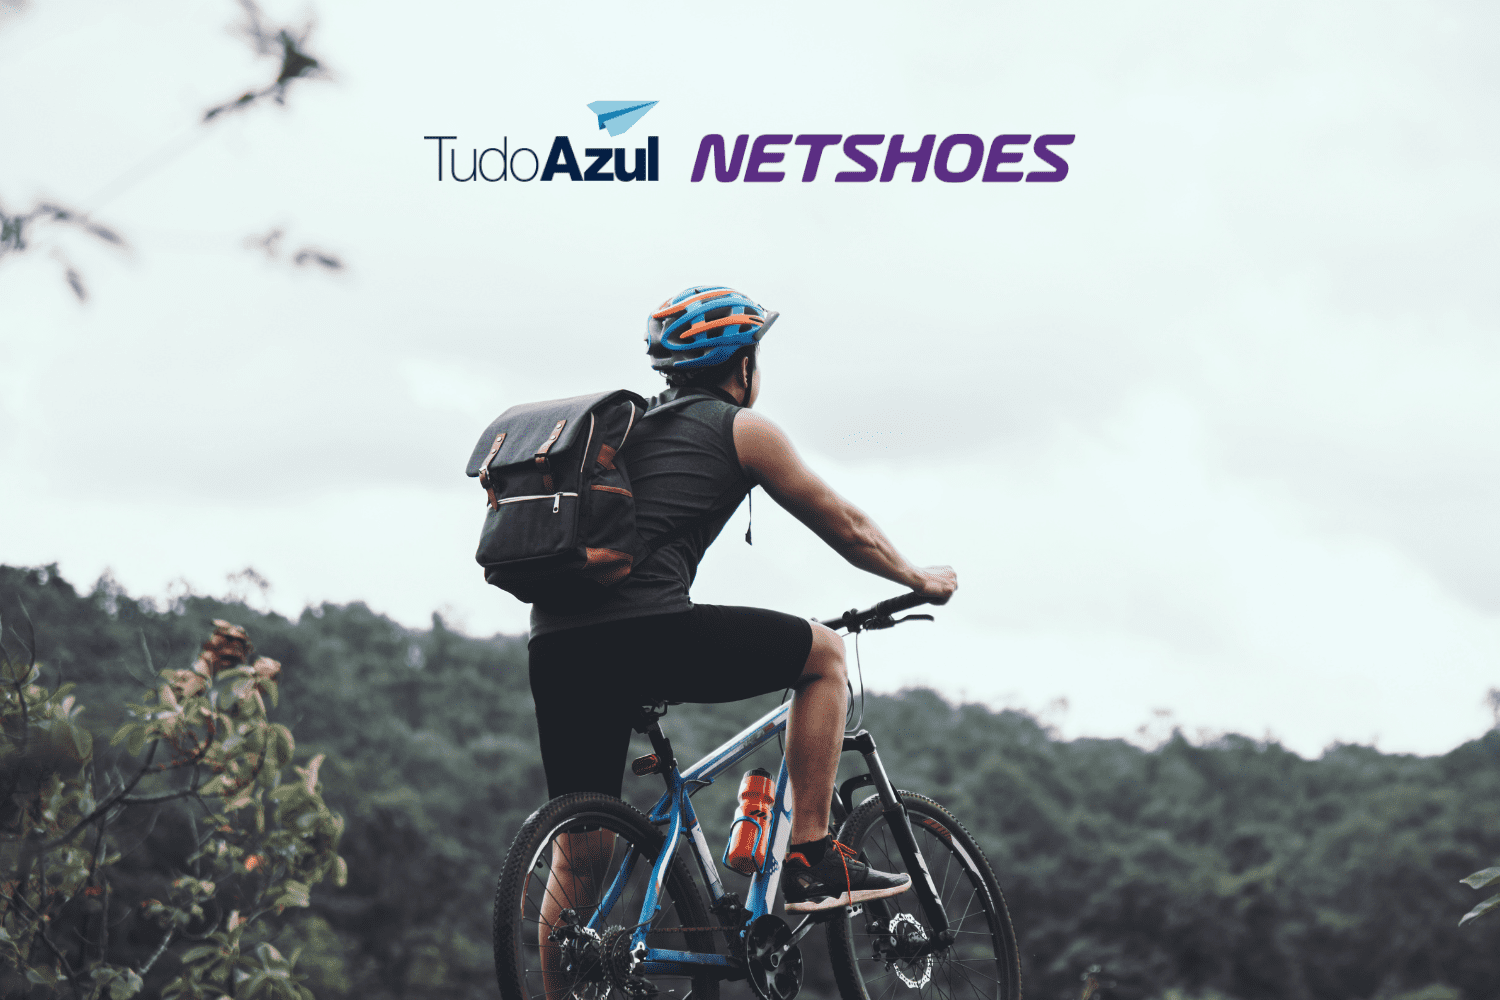 homem de bicicleta vendo o horizonte com logo tudoazul e netshoes